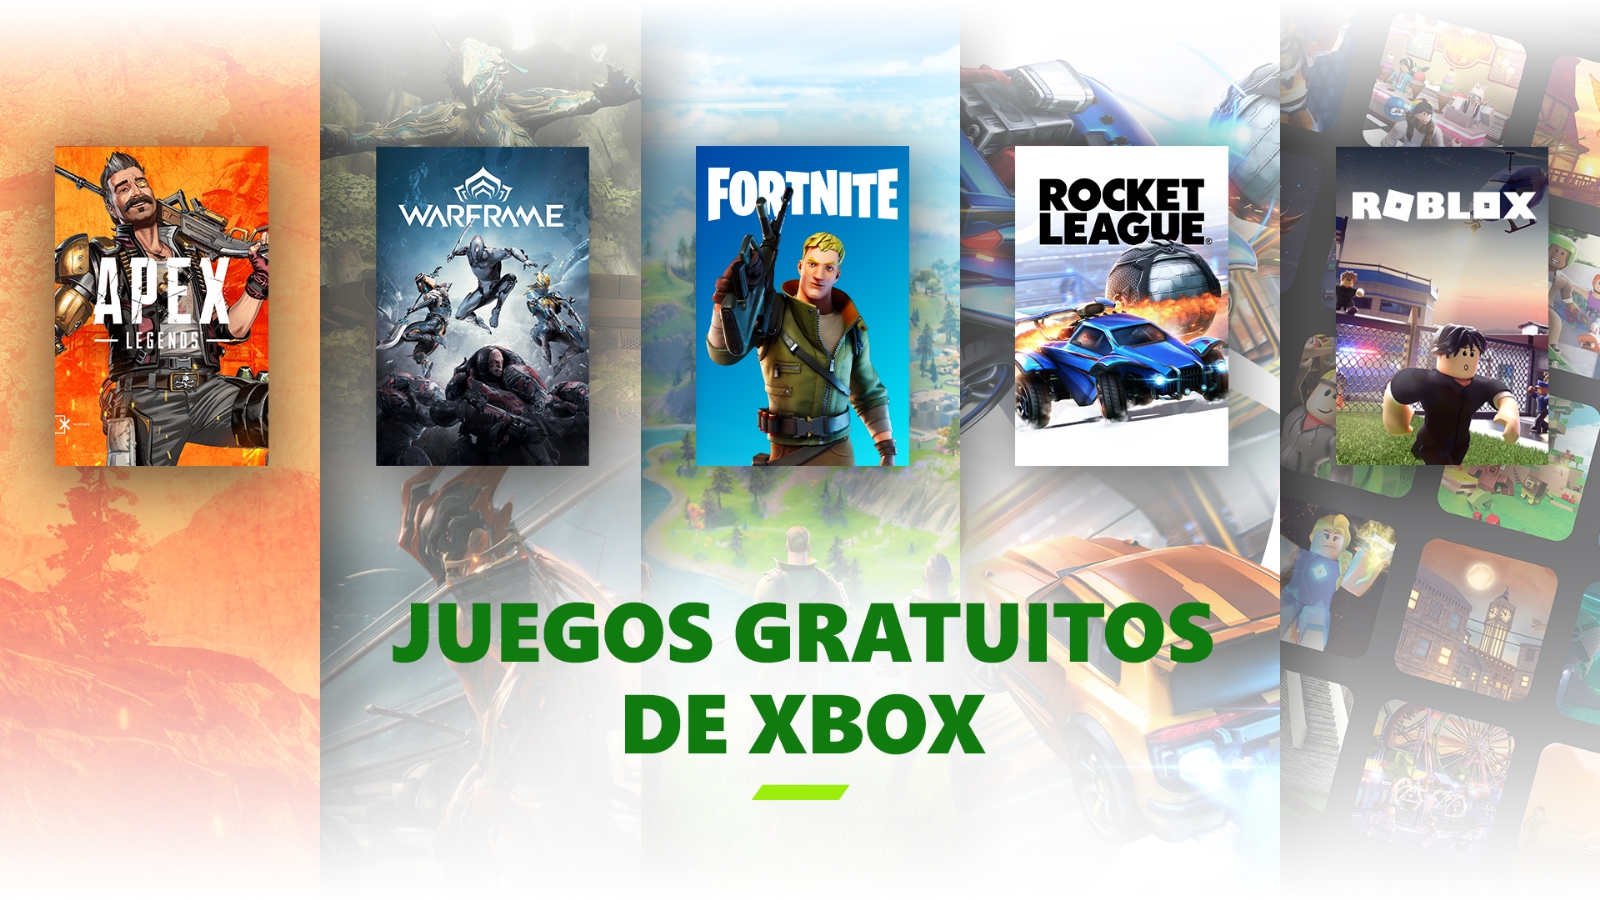 ‘Fortnite’y ‘Warzone’ son algunos de los títulos que podrás jugar gratis en Xbox